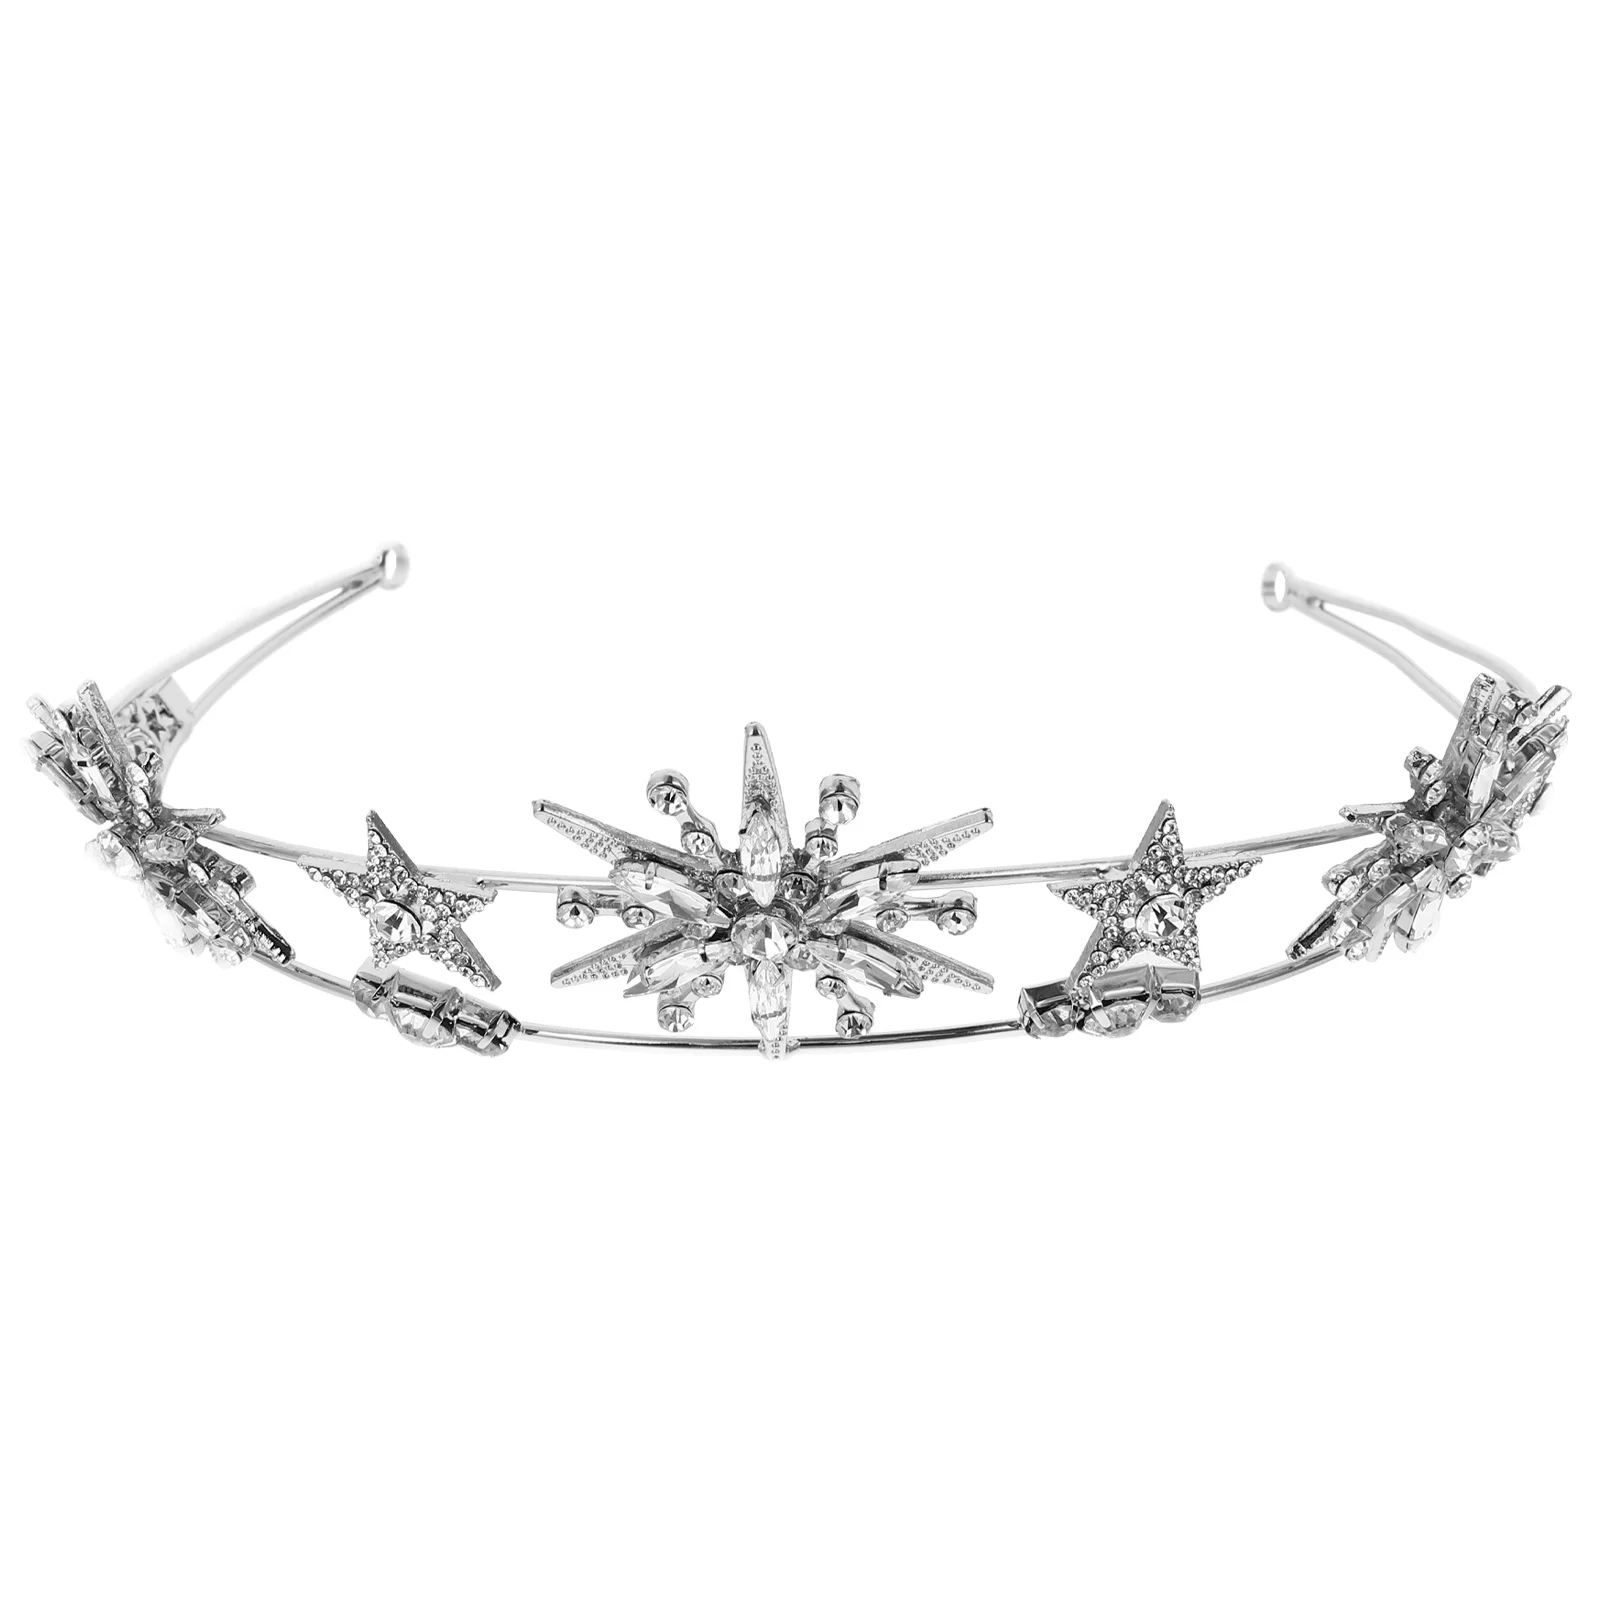 Crystal Headbands Women Girl Headband Rhinestone Crowns Tiaras Moon Goddess Headpiece